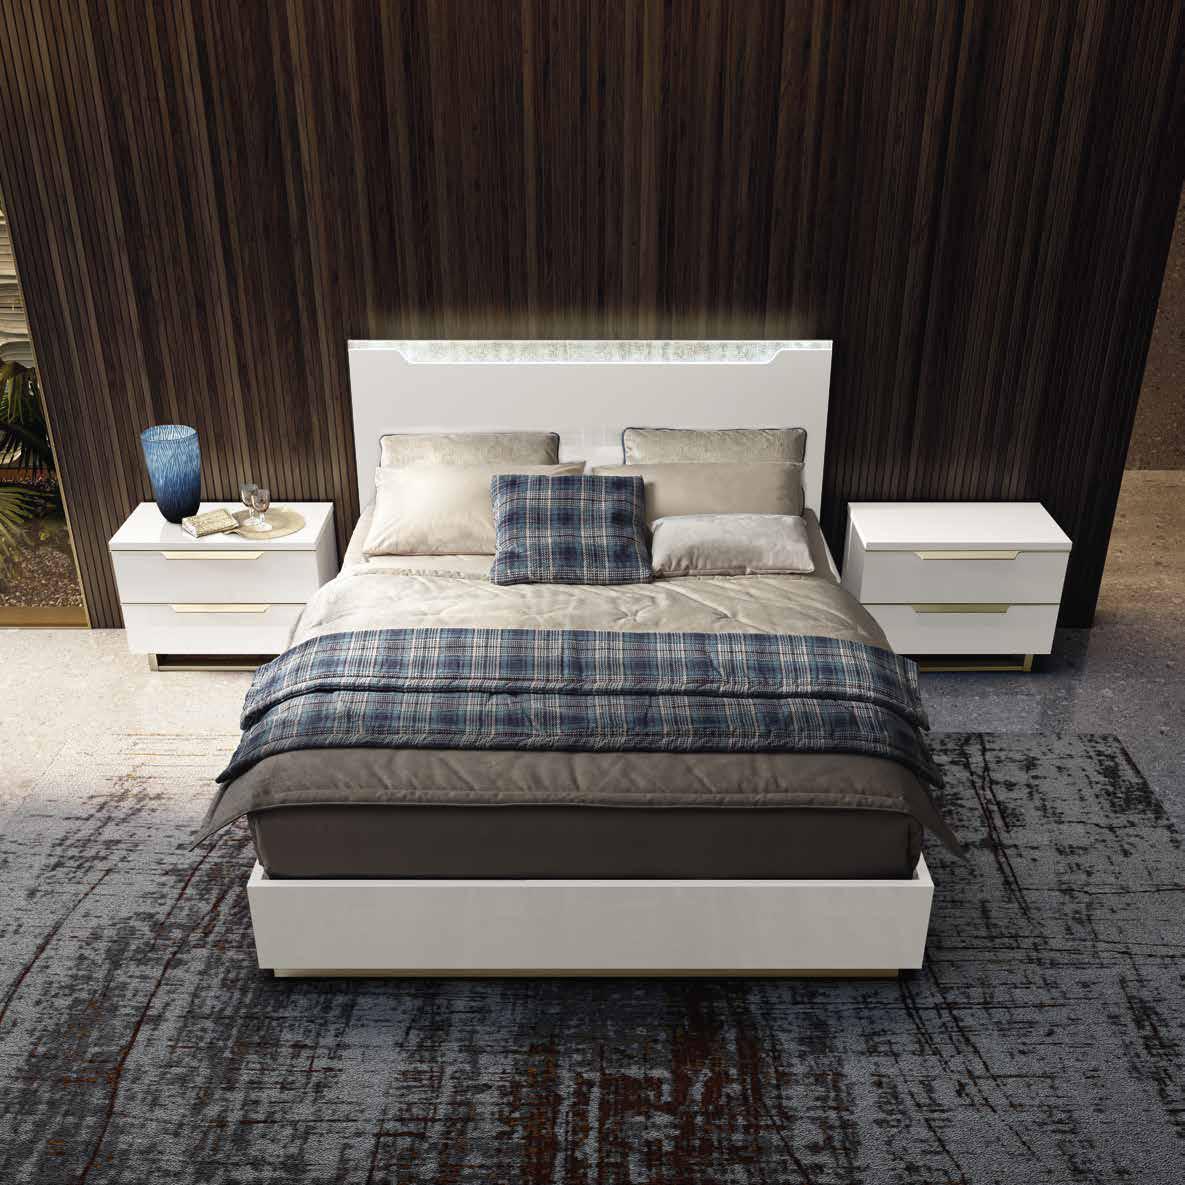 Кровать Camelgroup Smart Bianco, двуспальная, цвет: белый лак, 180x200 см (162LET.03BI)162LET.03BI